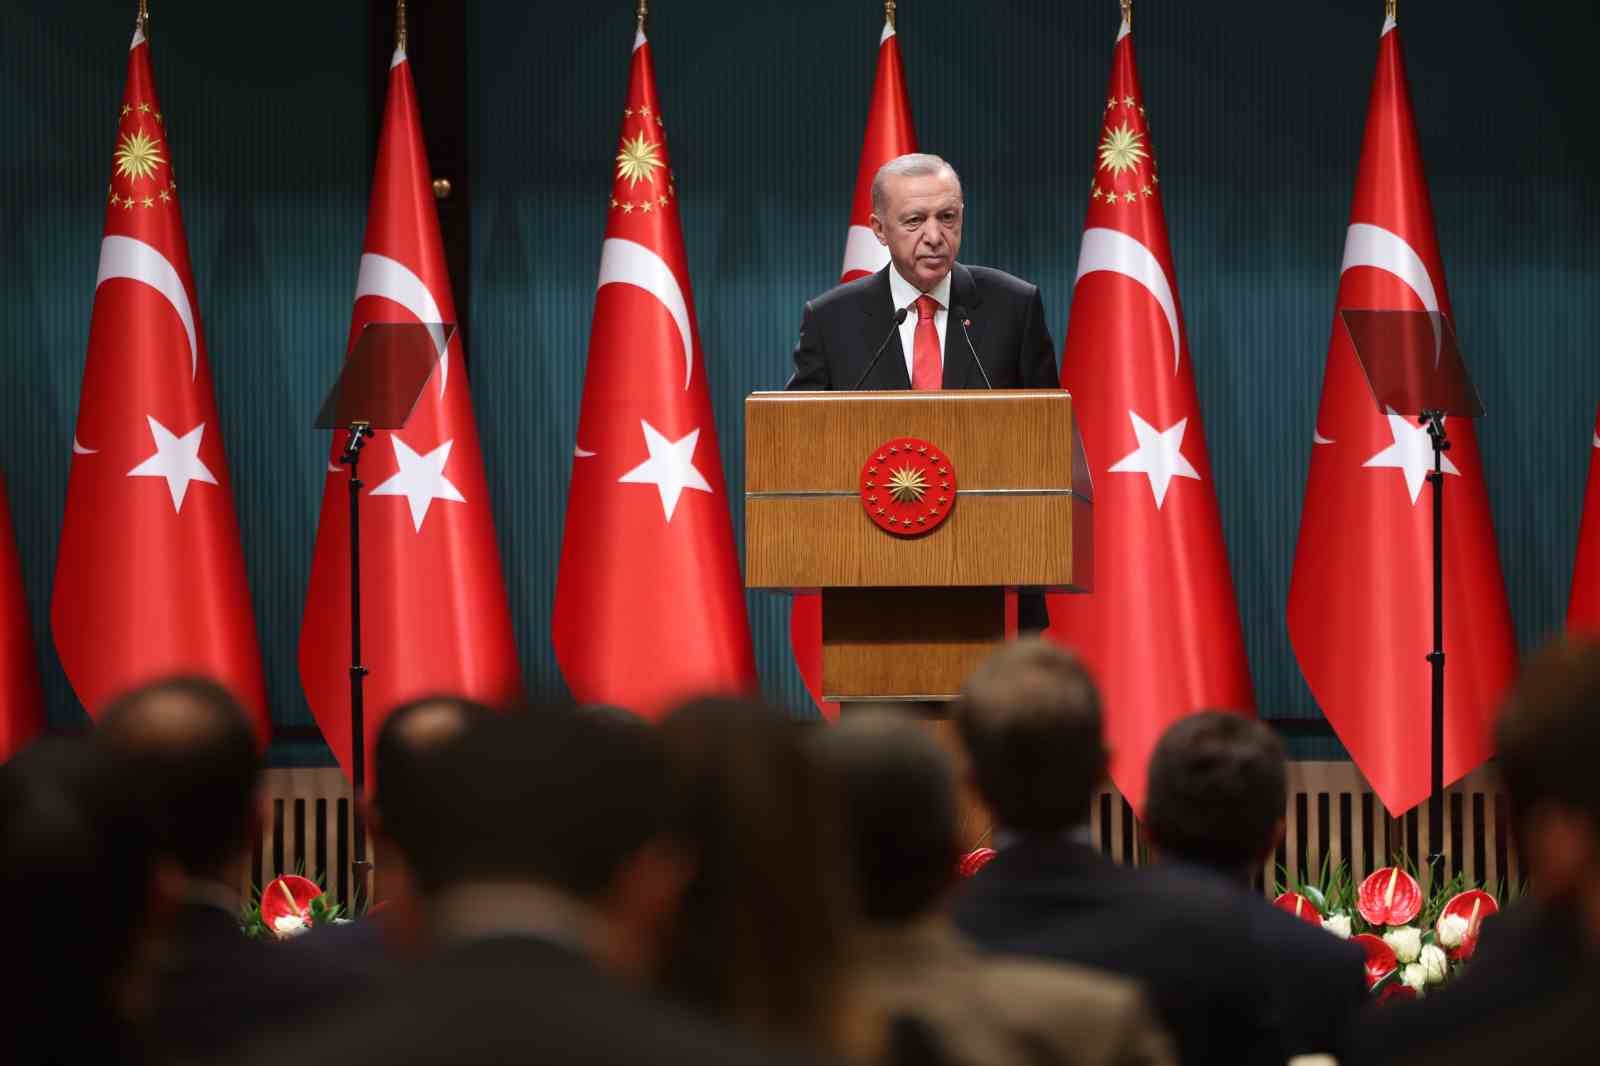 Cumhurbaşkanı Erdoğan: “Türkiye’nin geleceğini karartmak isteyen odaklara rağmen ülkemizi hedeflerine ulaştırmak için yolumuza devam edeceğiz”